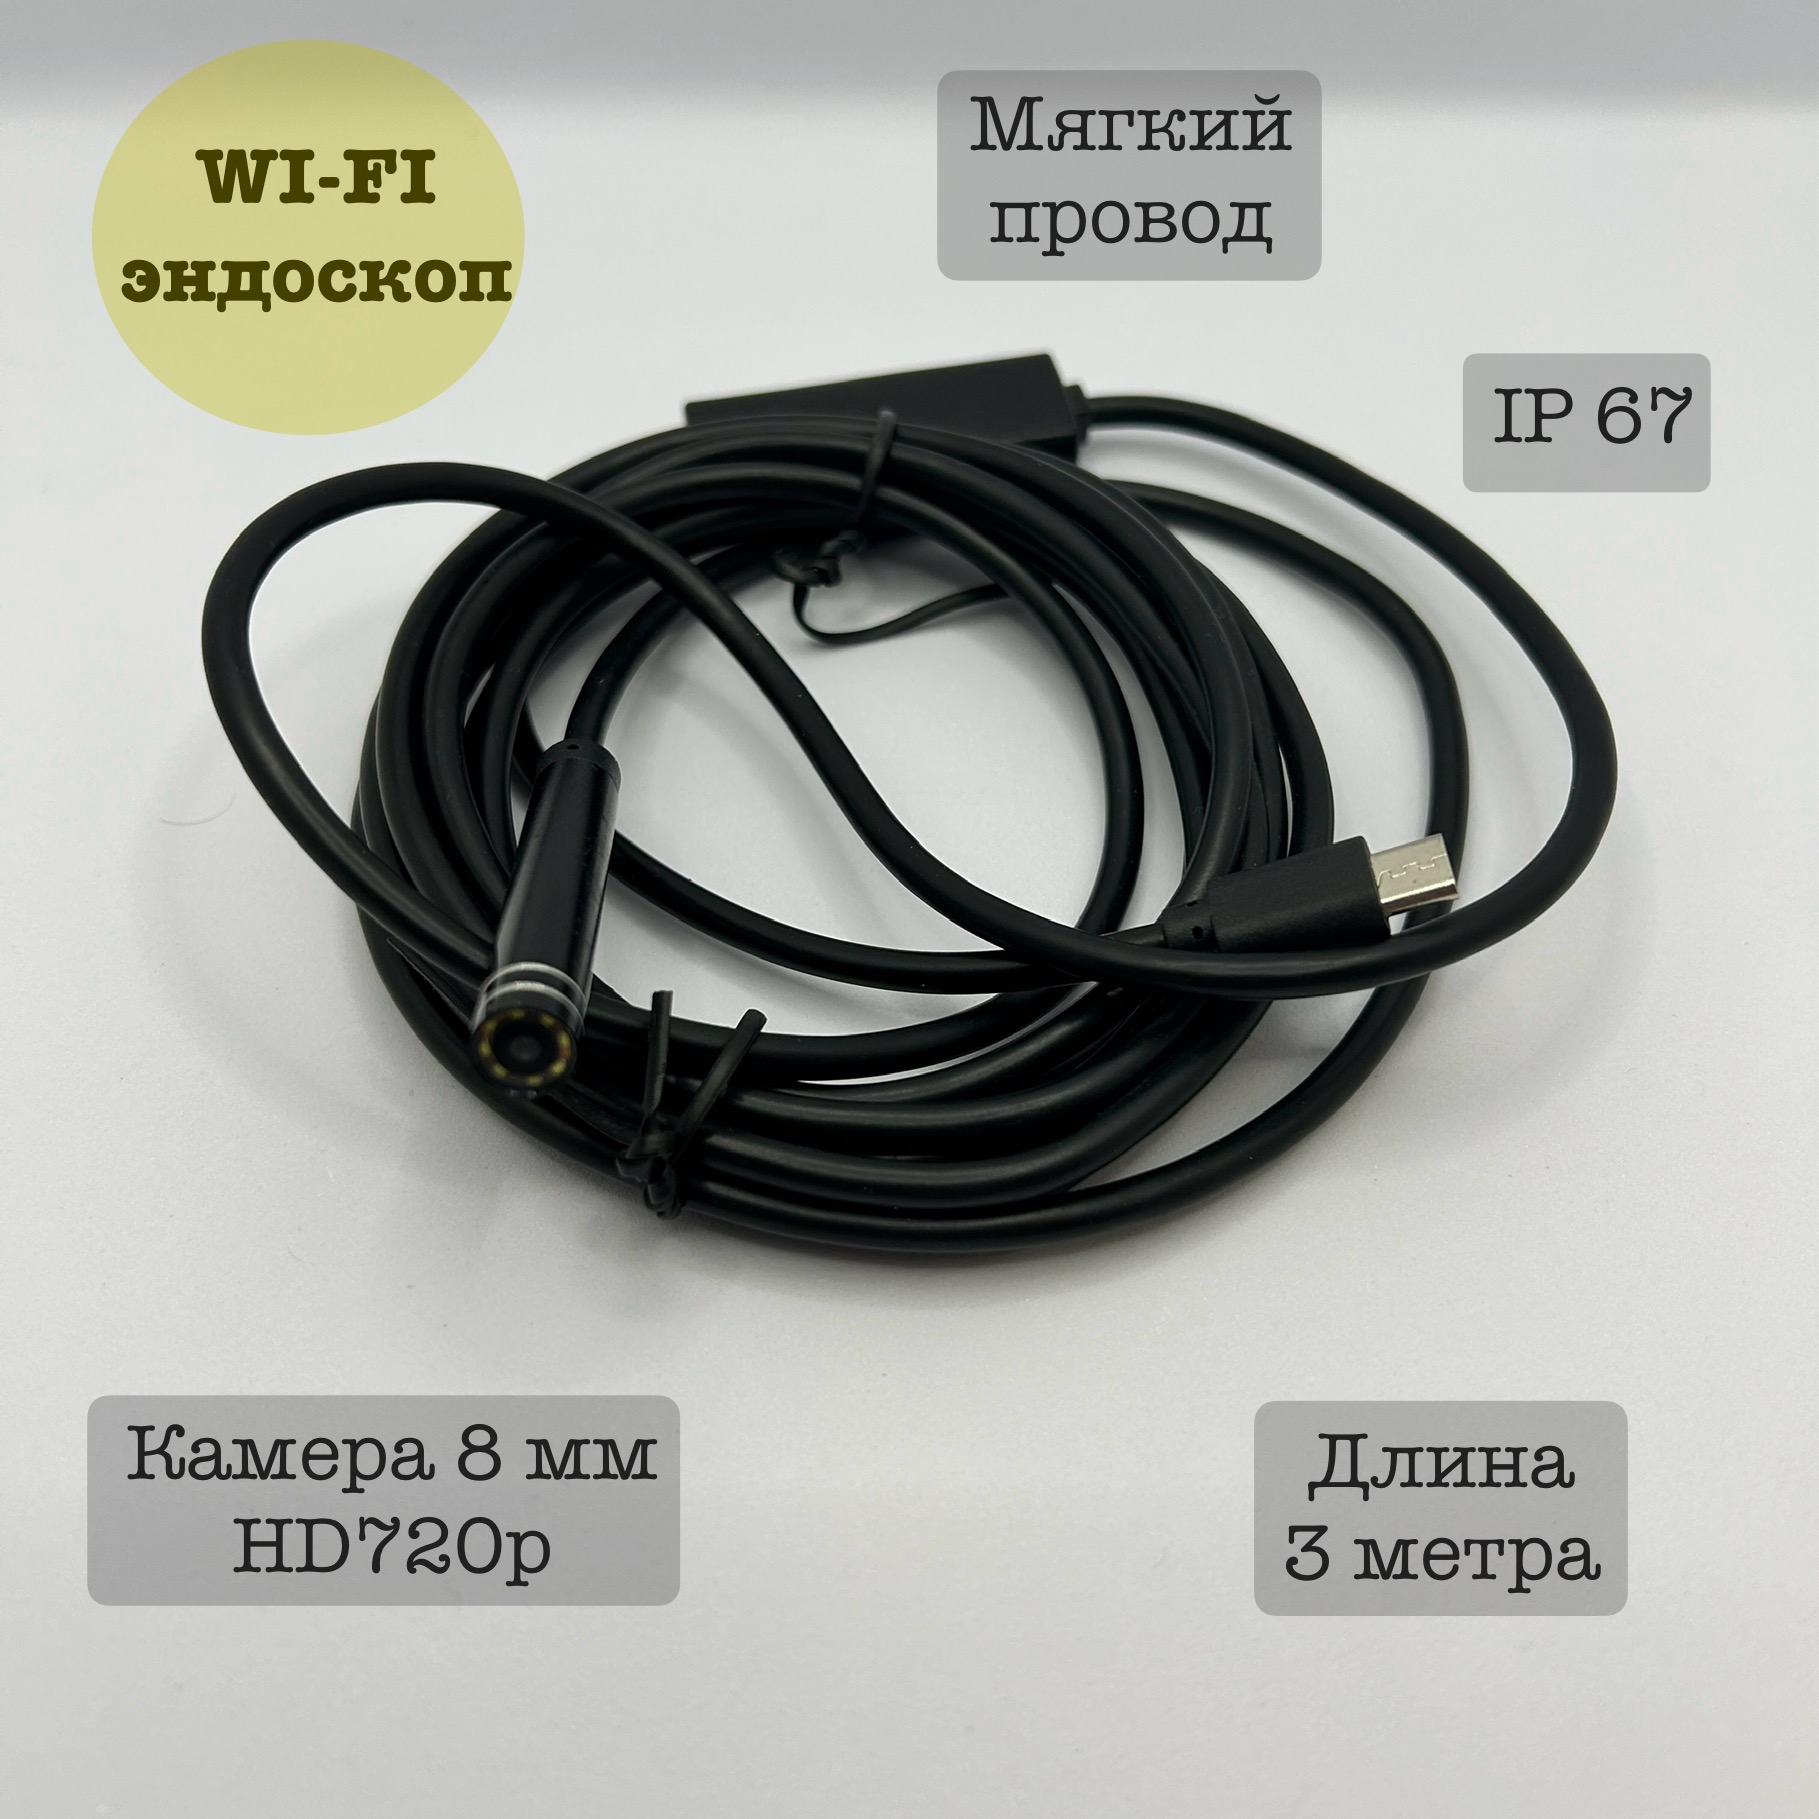 Эндоскоп Wi-fi для автомобиля YPC99-5, 3 метра, мягкий